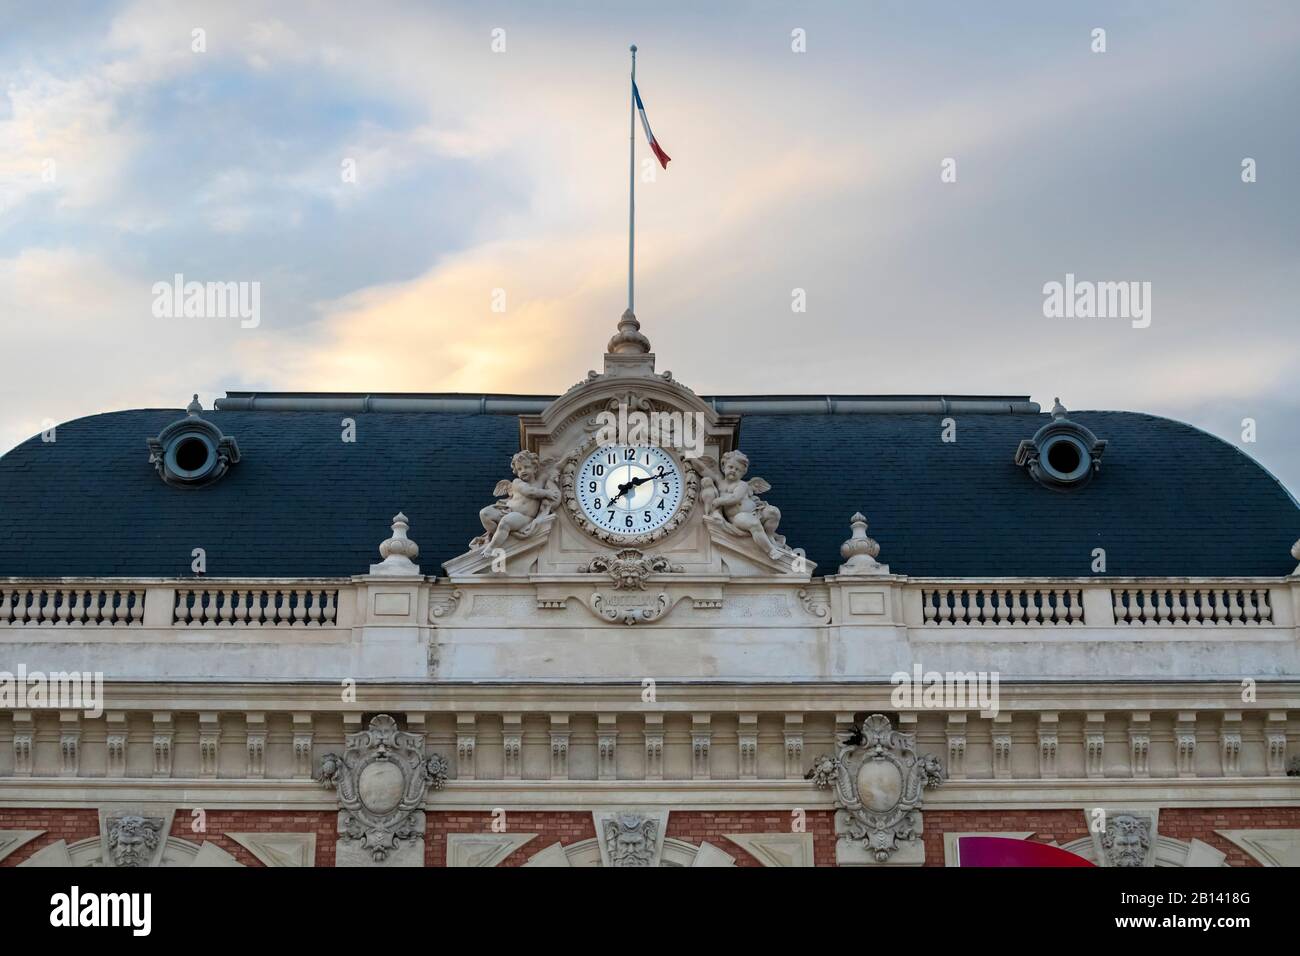 Le bâtiment ferroviaire historique avec drapeau français survolant, sur la Côte d'Azur dans la ville de Nice, France. Banque D'Images